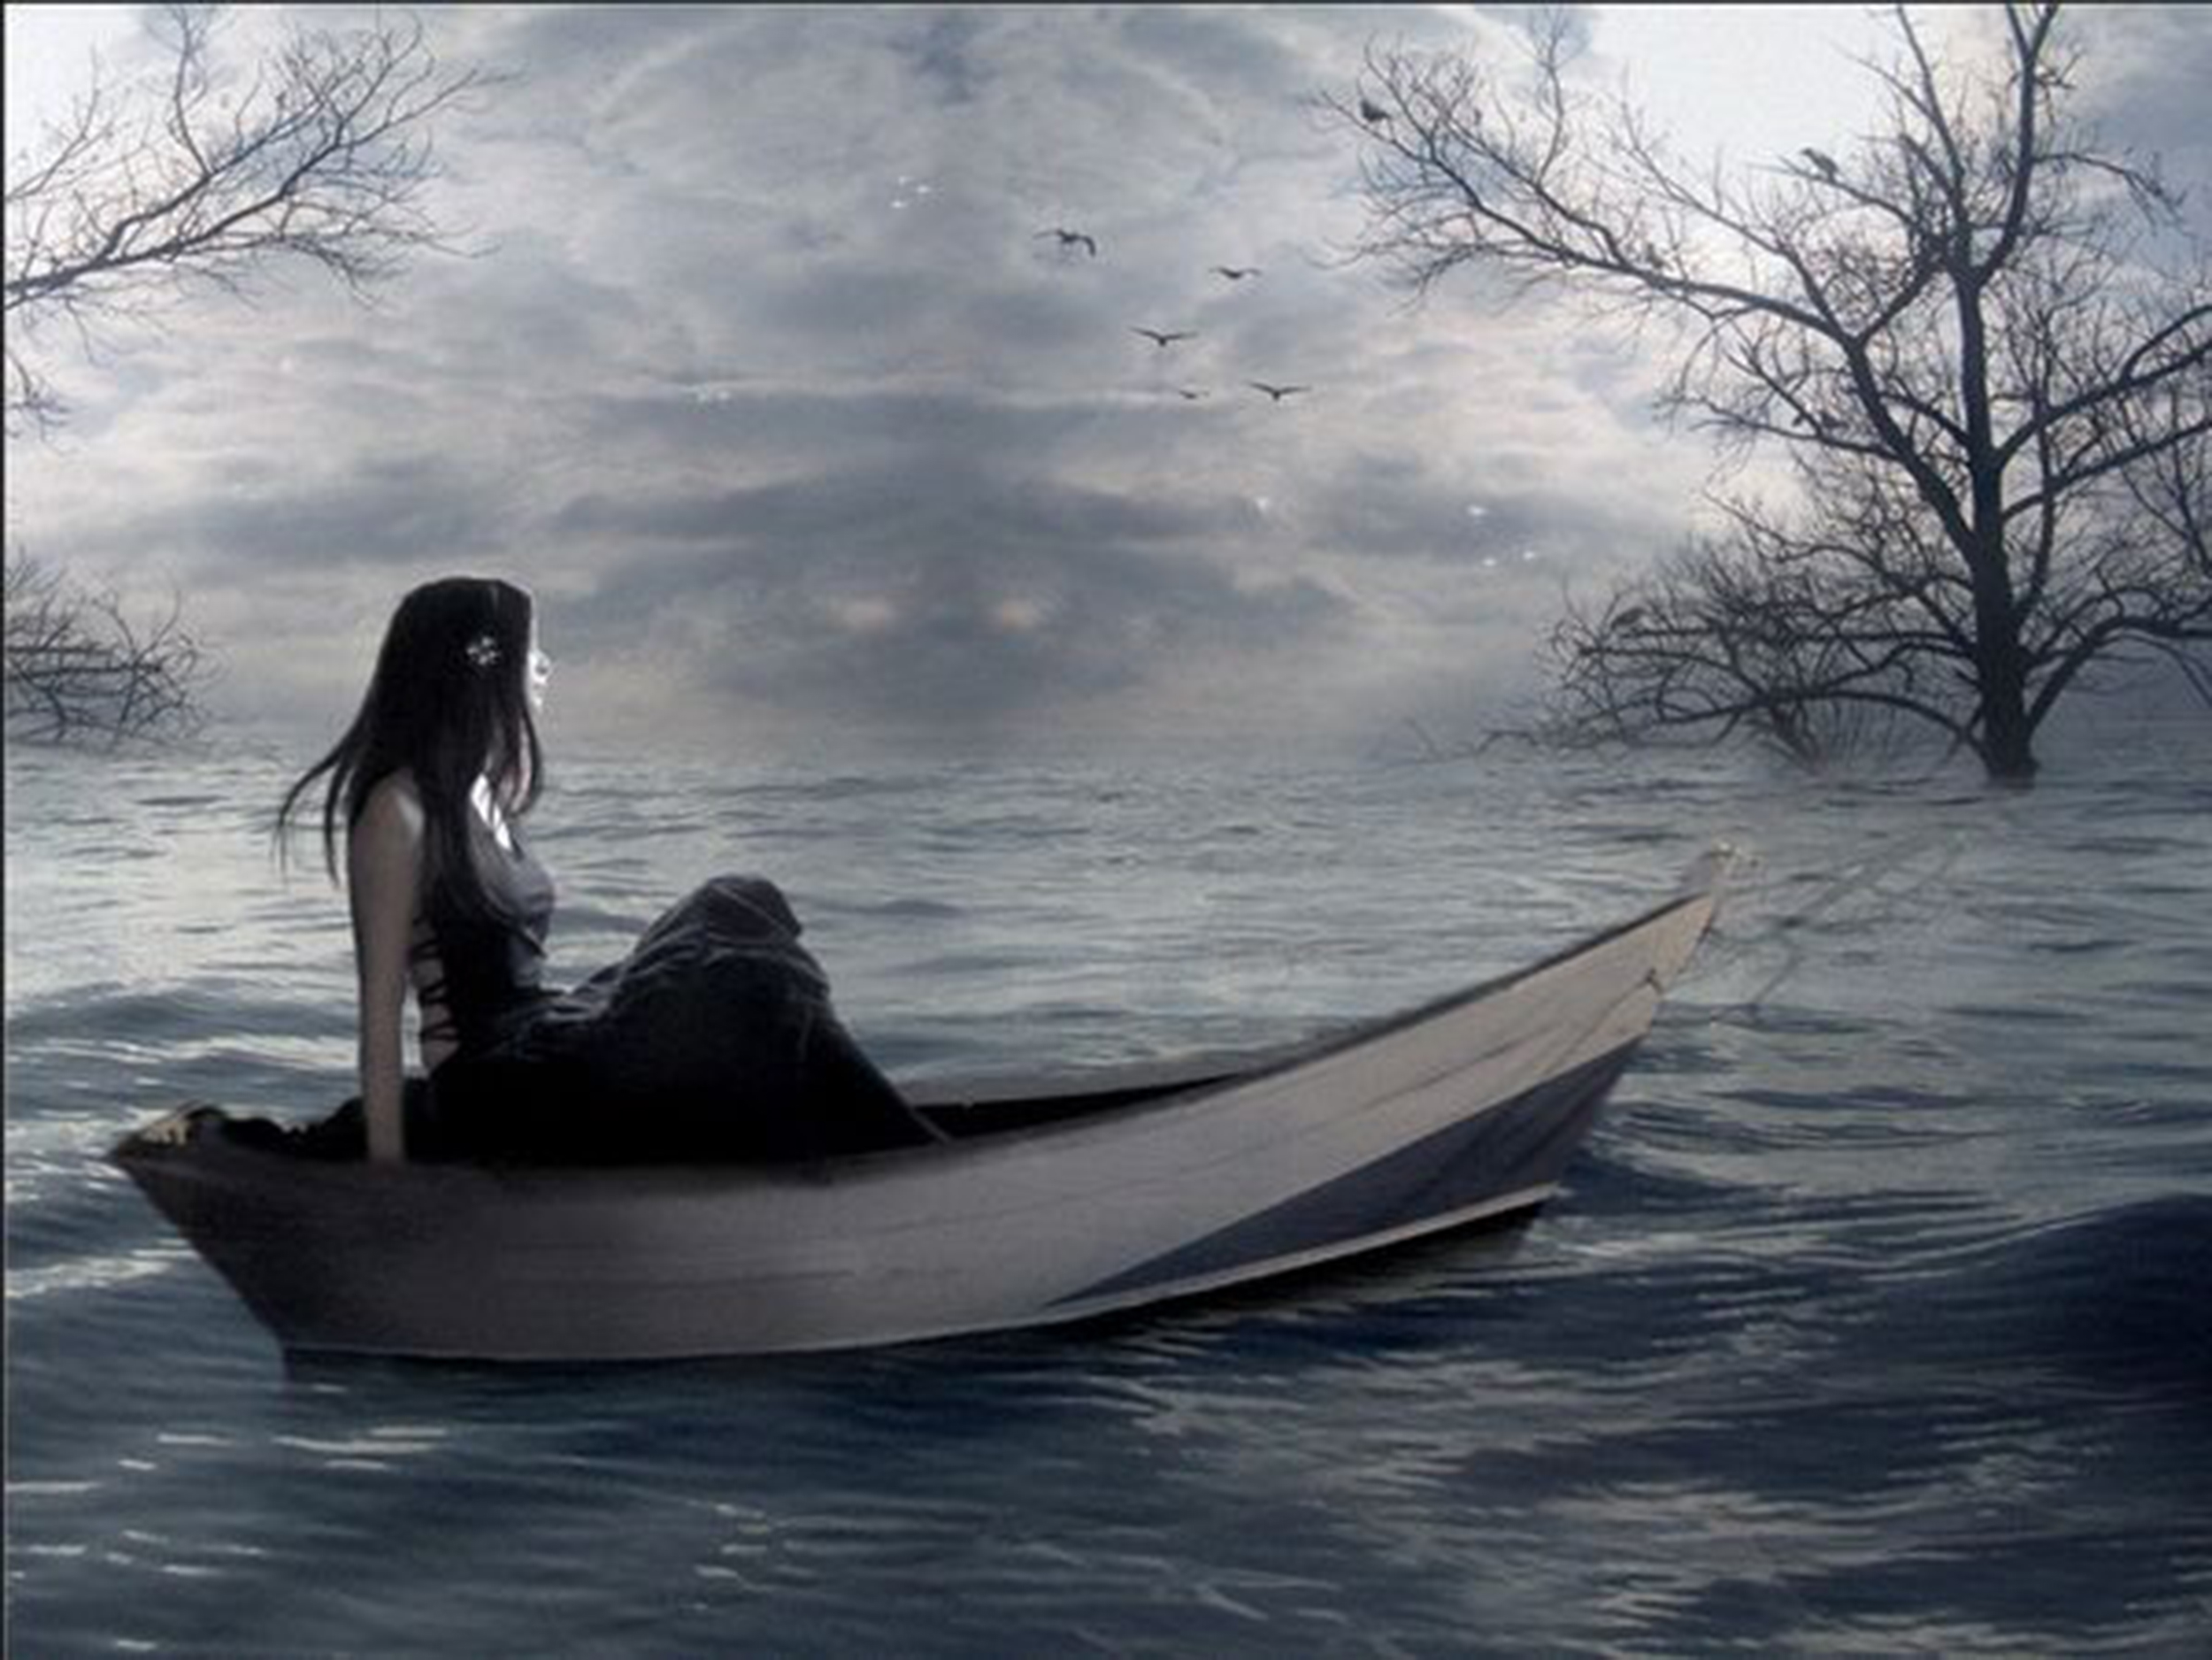 Кругом стало темно. Девушка в лодке. Девушка плывет на лодке. Девушка грустная у лодки. Одинокая лодка.